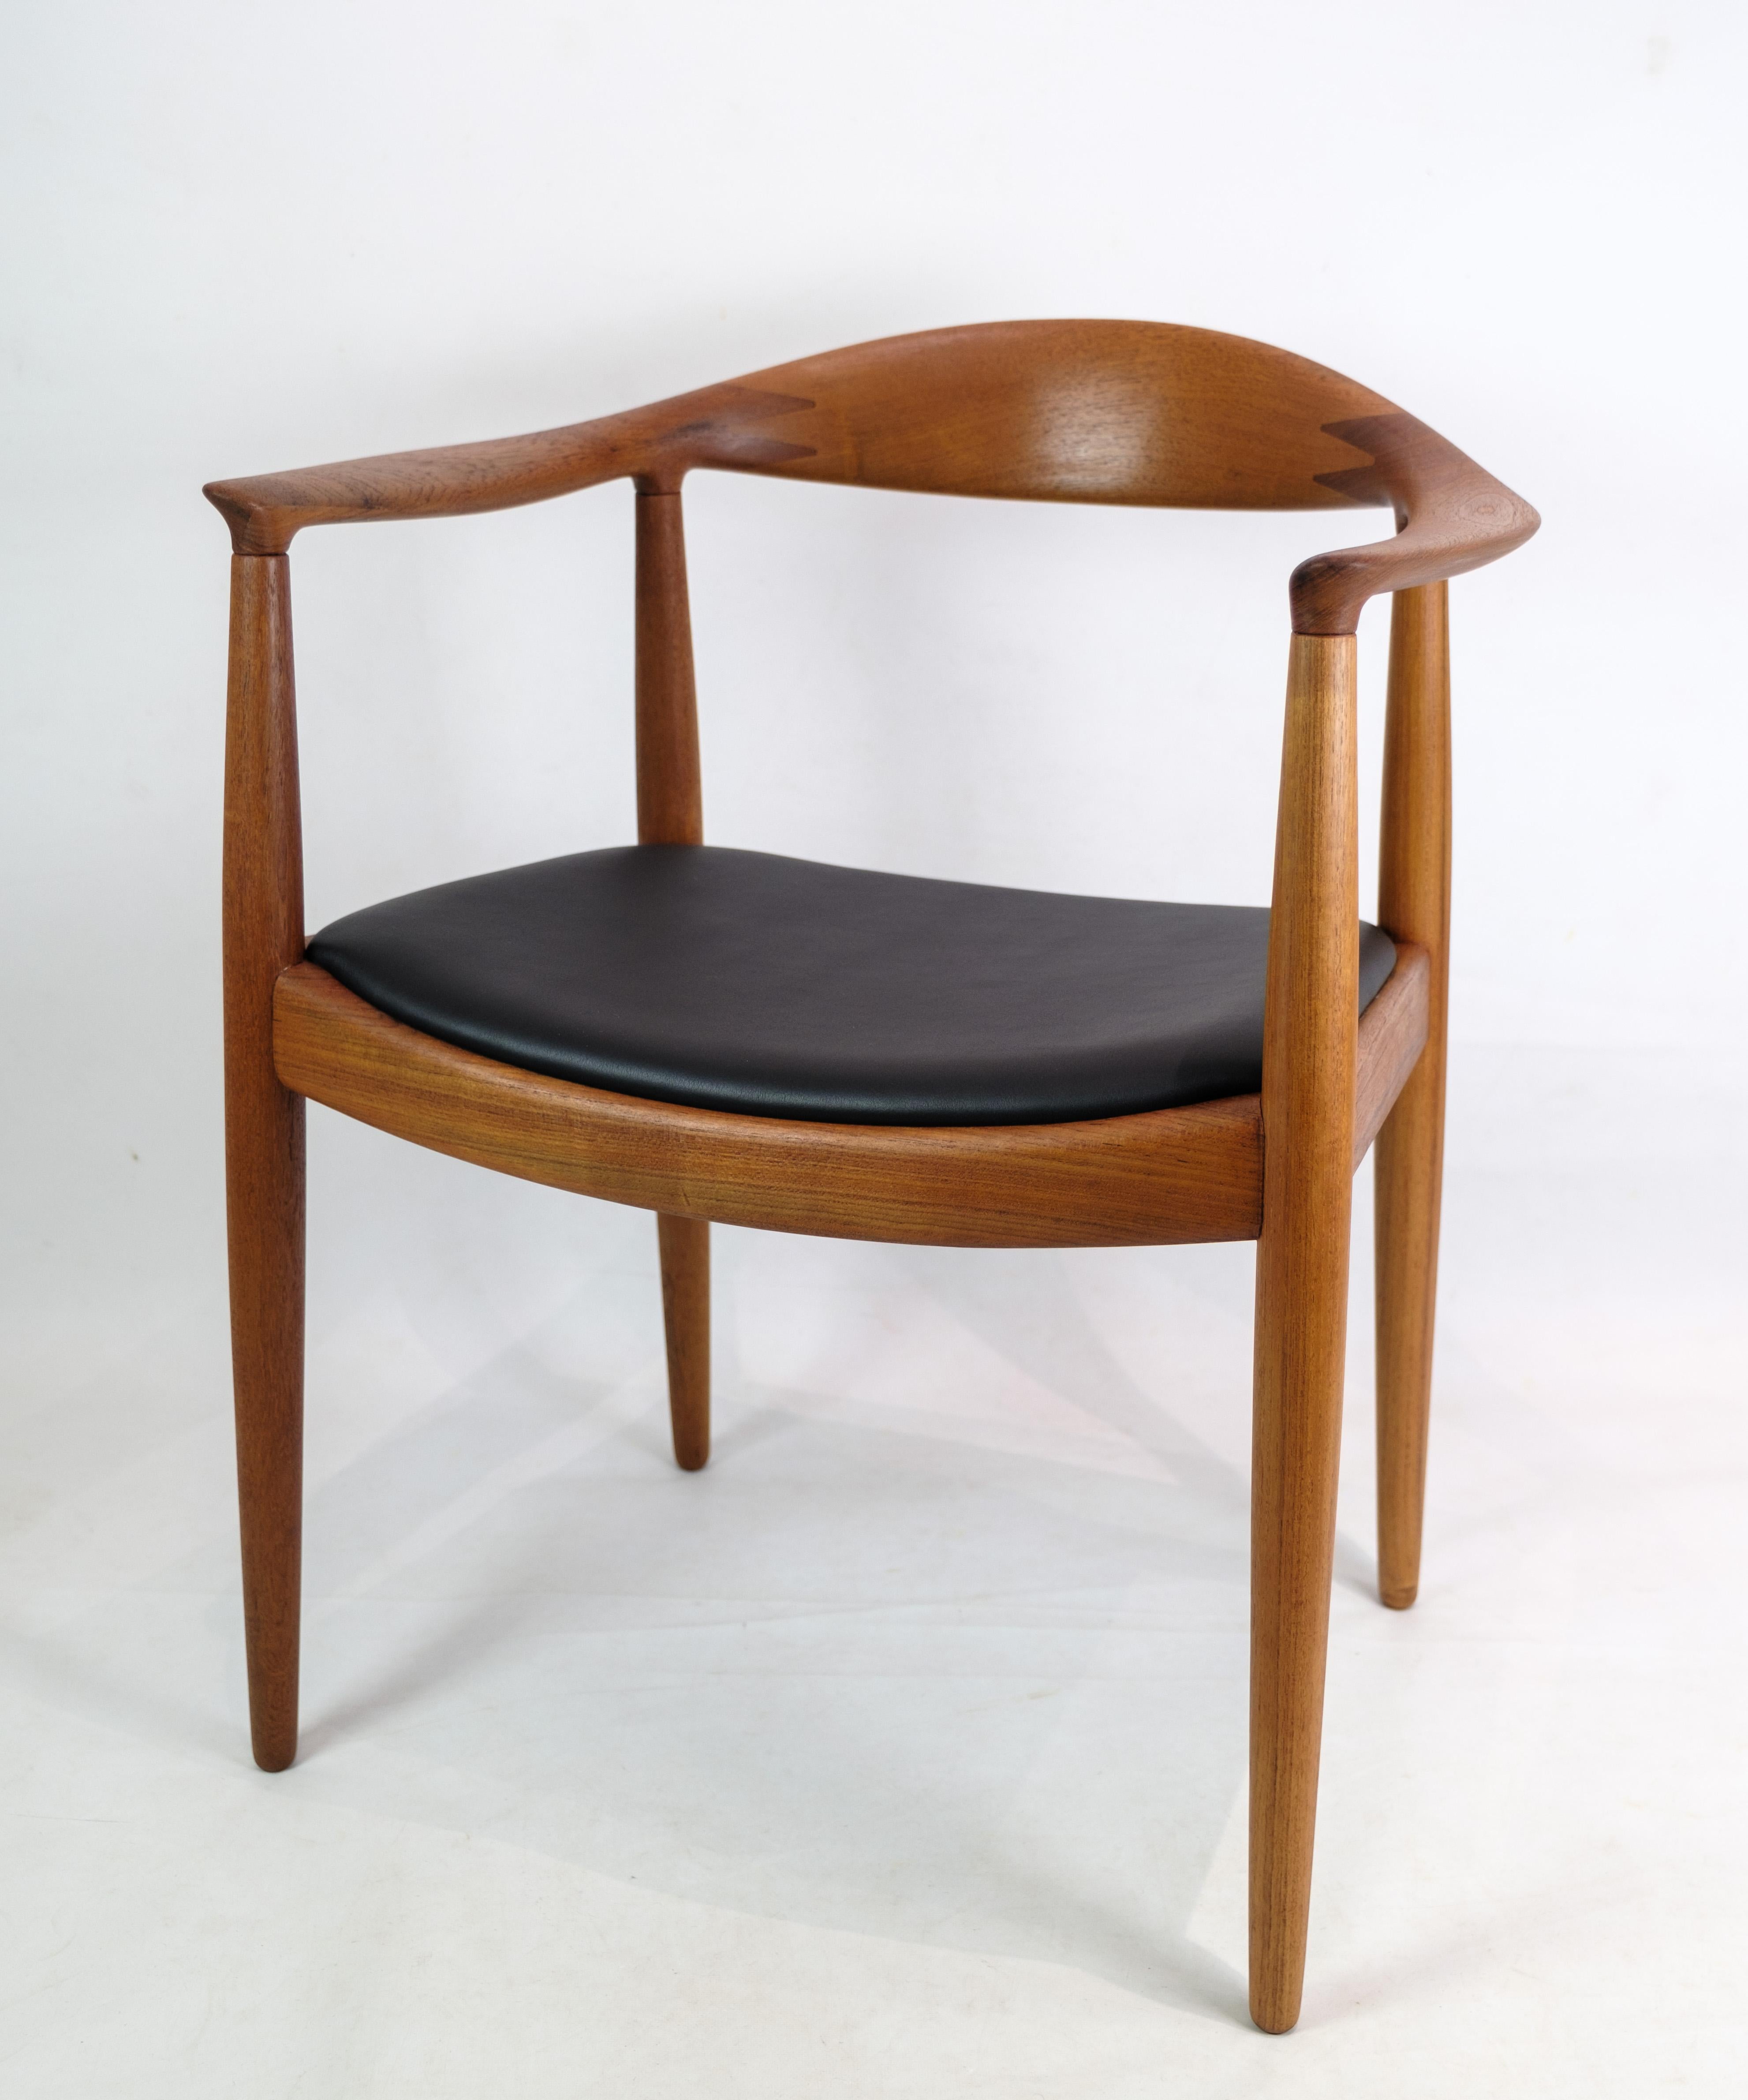 Il s'agit d'une chaise en teck et en cuir conçue par Hans J. Wegner pour Johannes Hansen dans les années 1950. Le modèle JH 503 est connu sous le nom de 